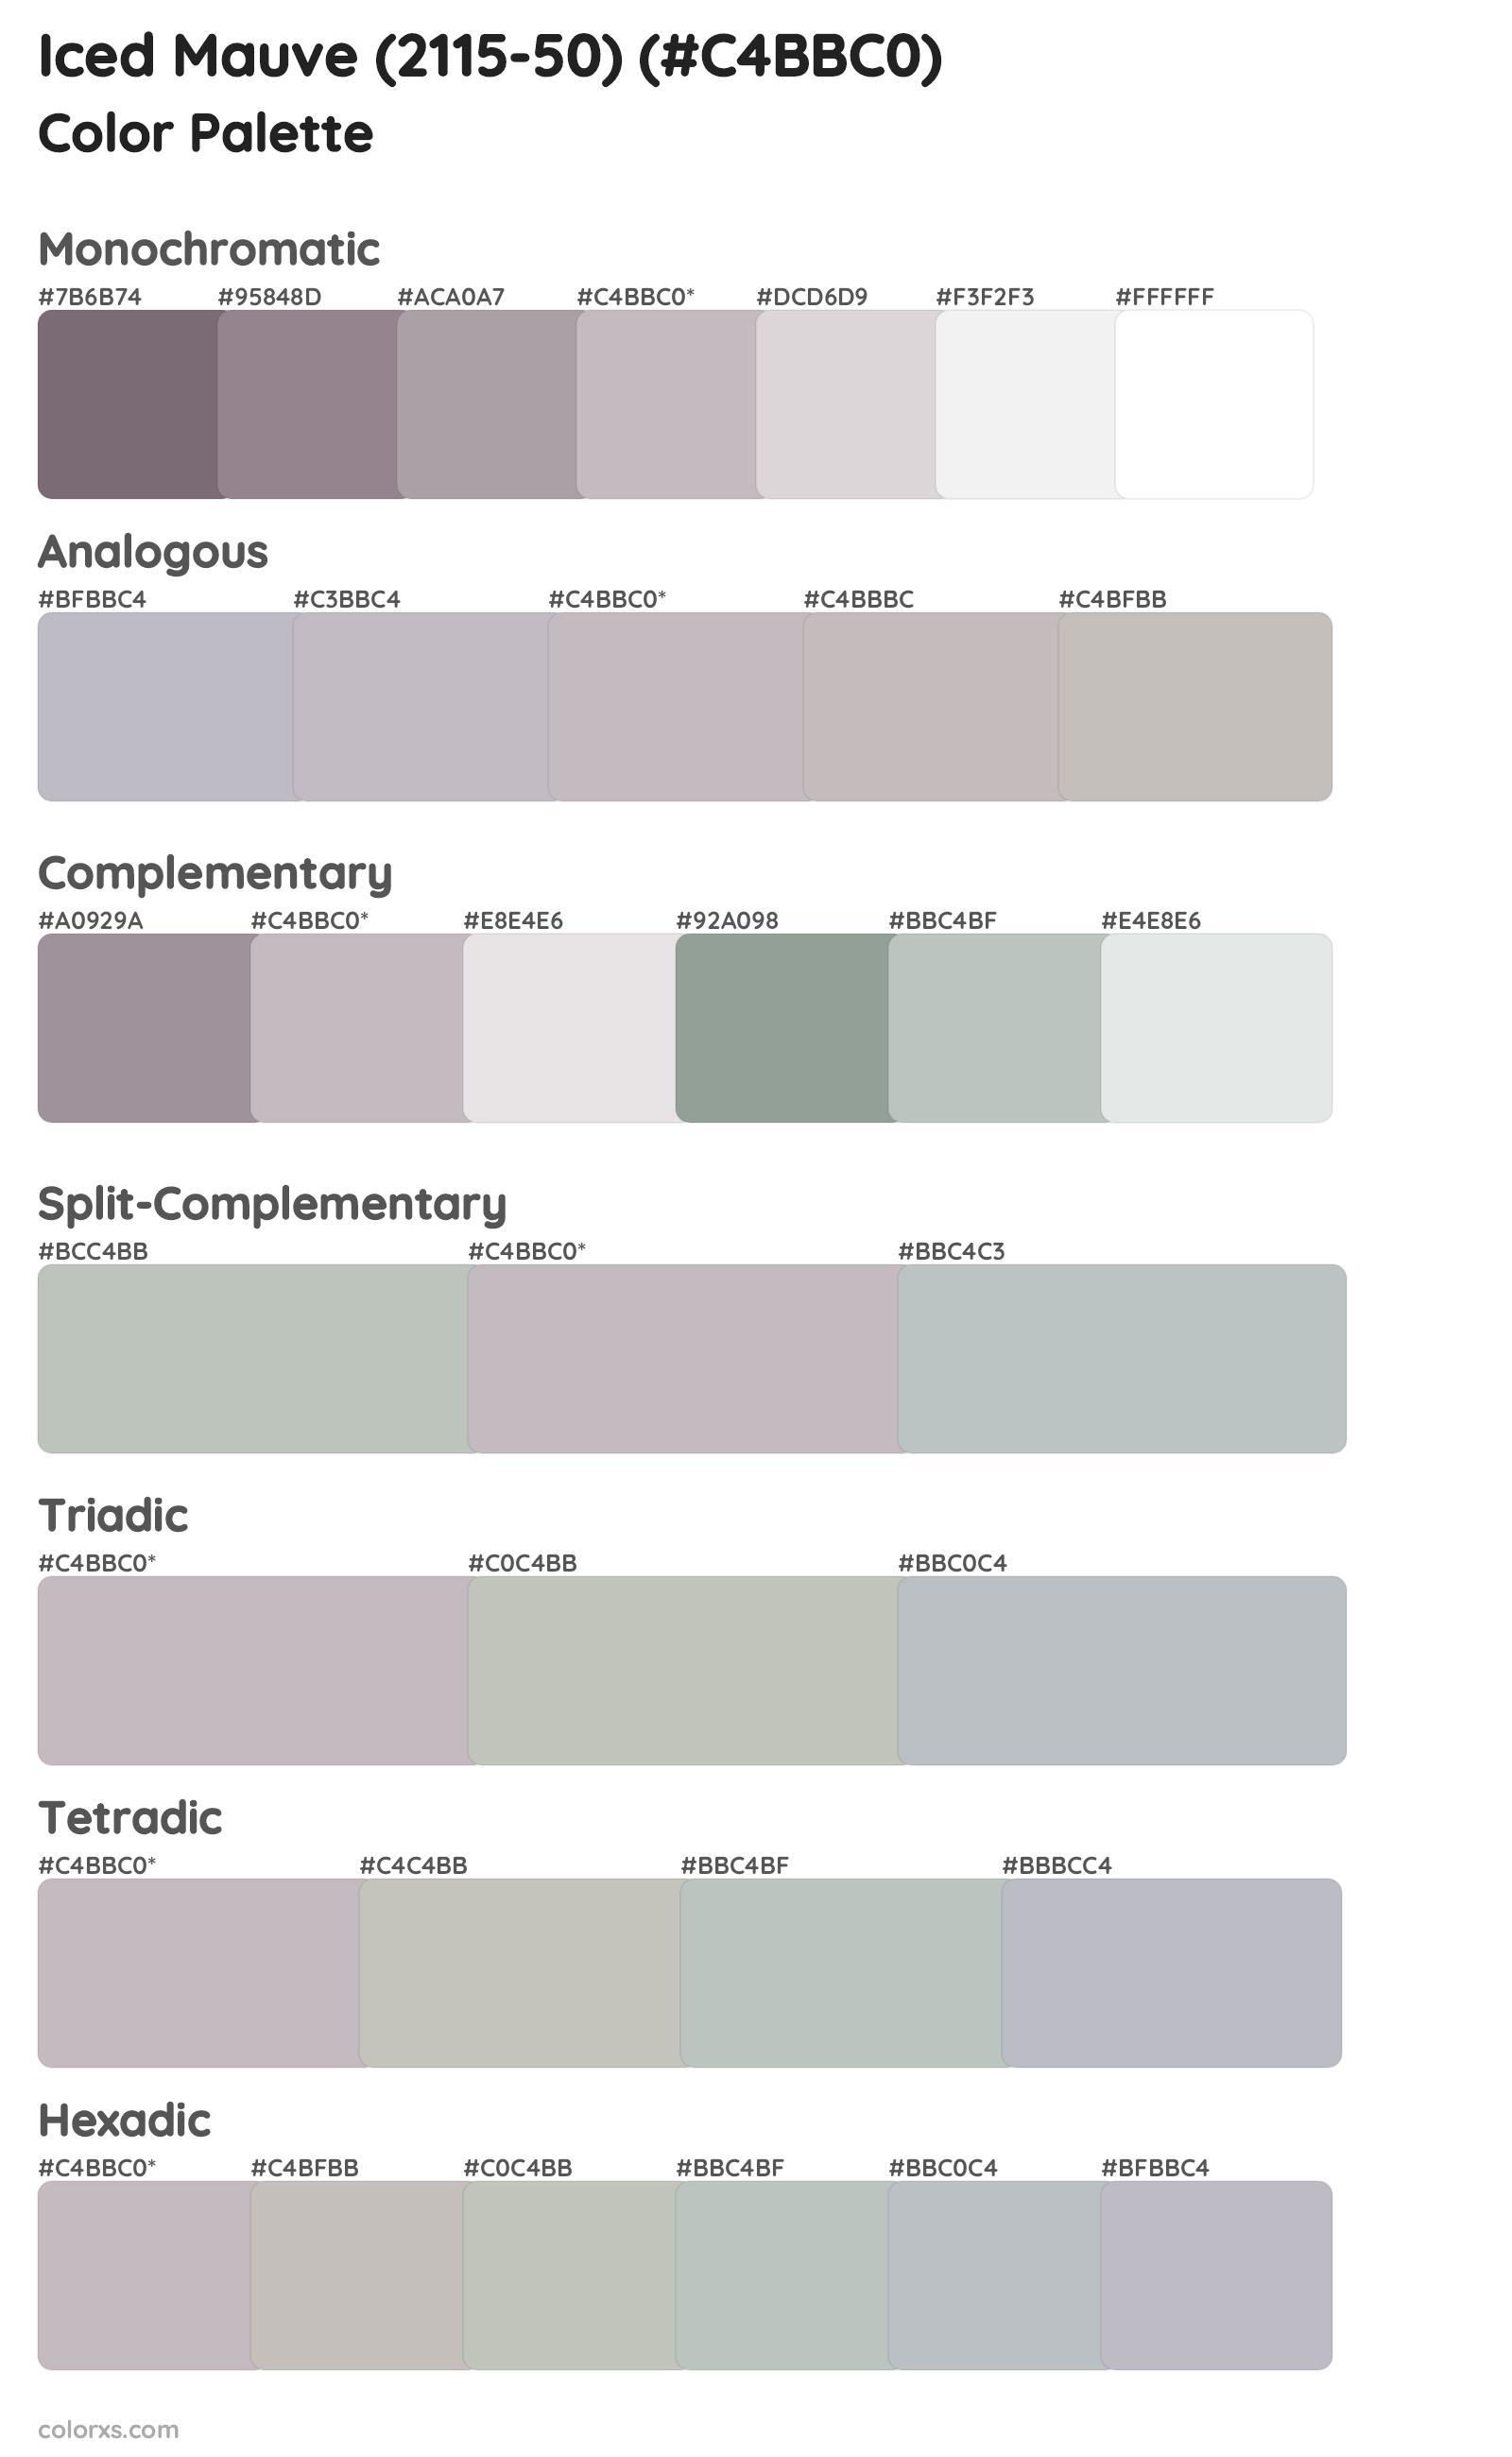 Iced Mauve (2115-50) Color Scheme Palettes